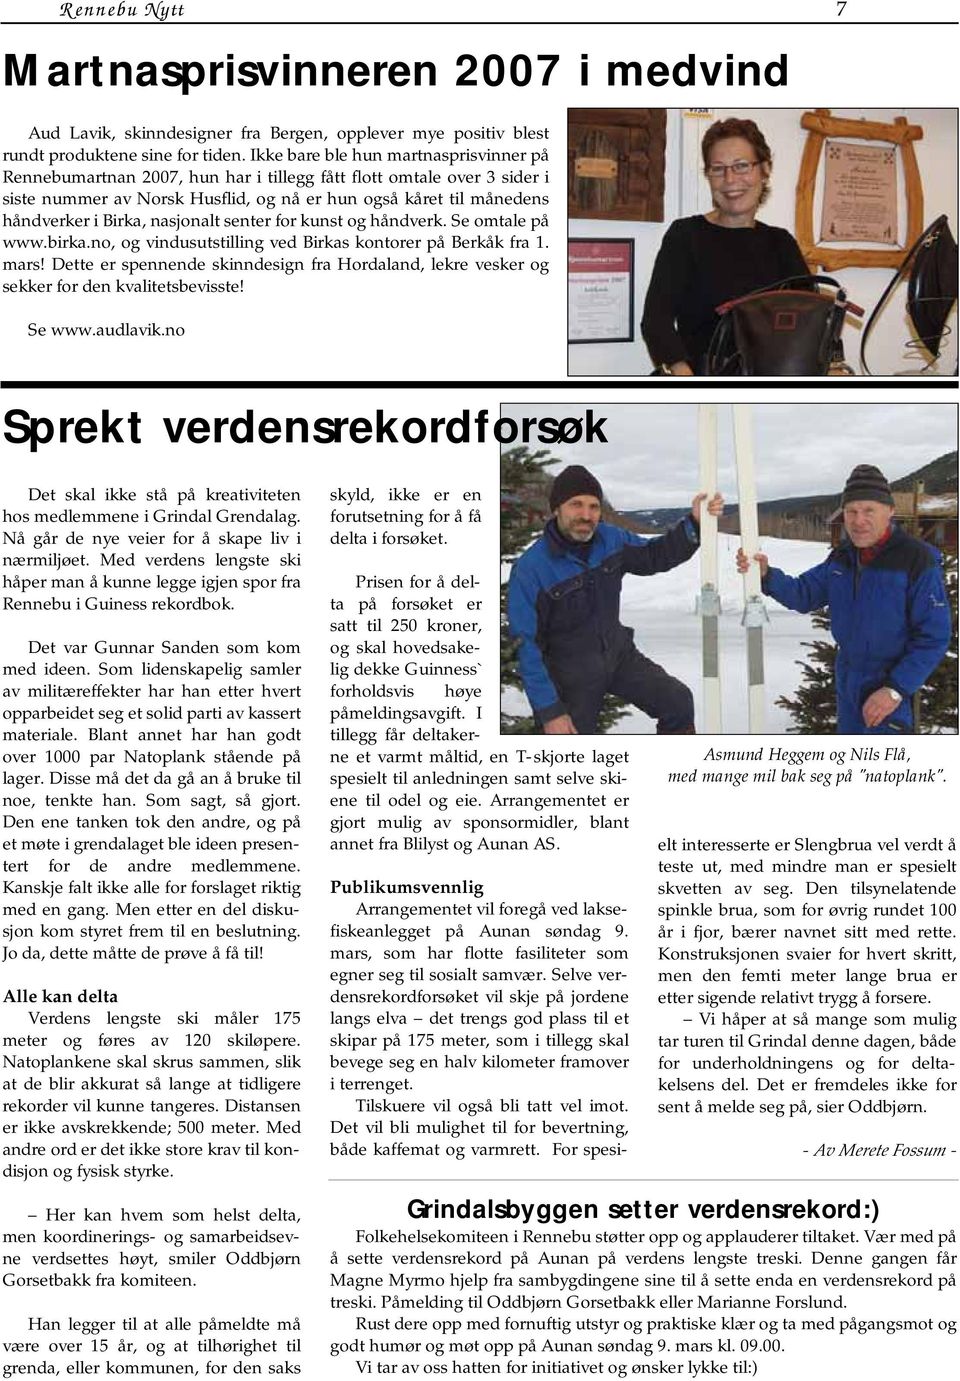 nasjonalt senter for kunst og håndverk. Se omtale på www.birka.no, og vindusutstilling ved Birkas kontorer på Berkåk fra 1. mars!